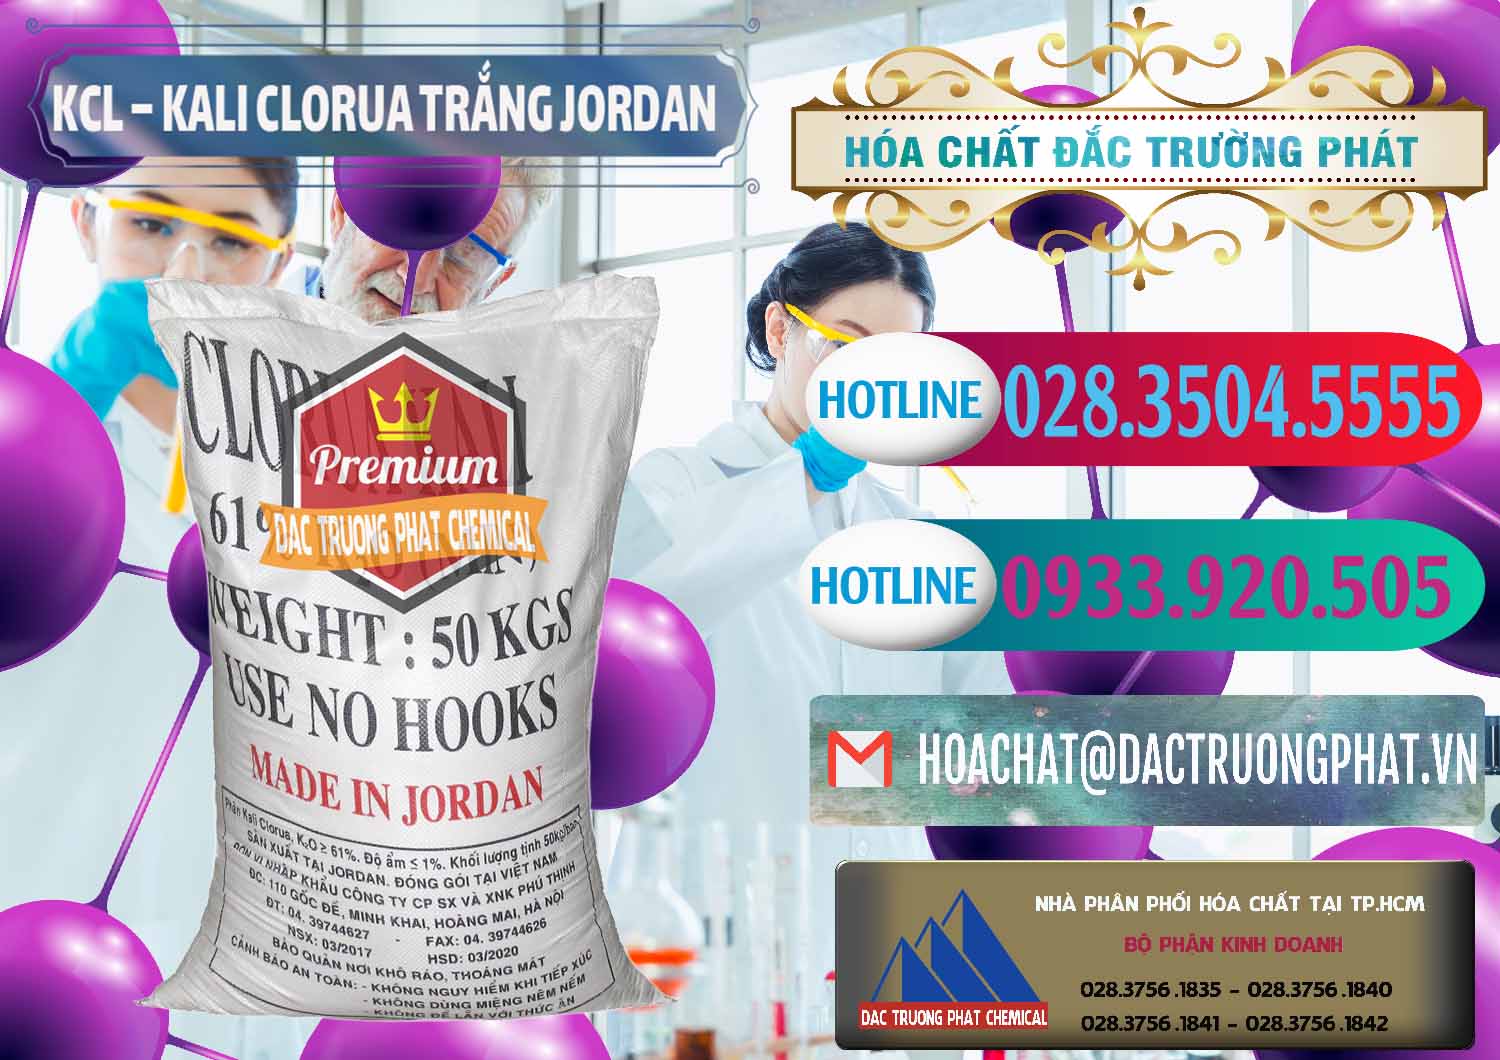 Cty chuyên bán & cung cấp KCL – Kali Clorua Trắng Jordan - 0088 - Chuyên cung cấp và nhập khẩu hóa chất tại TP.HCM - truongphat.vn